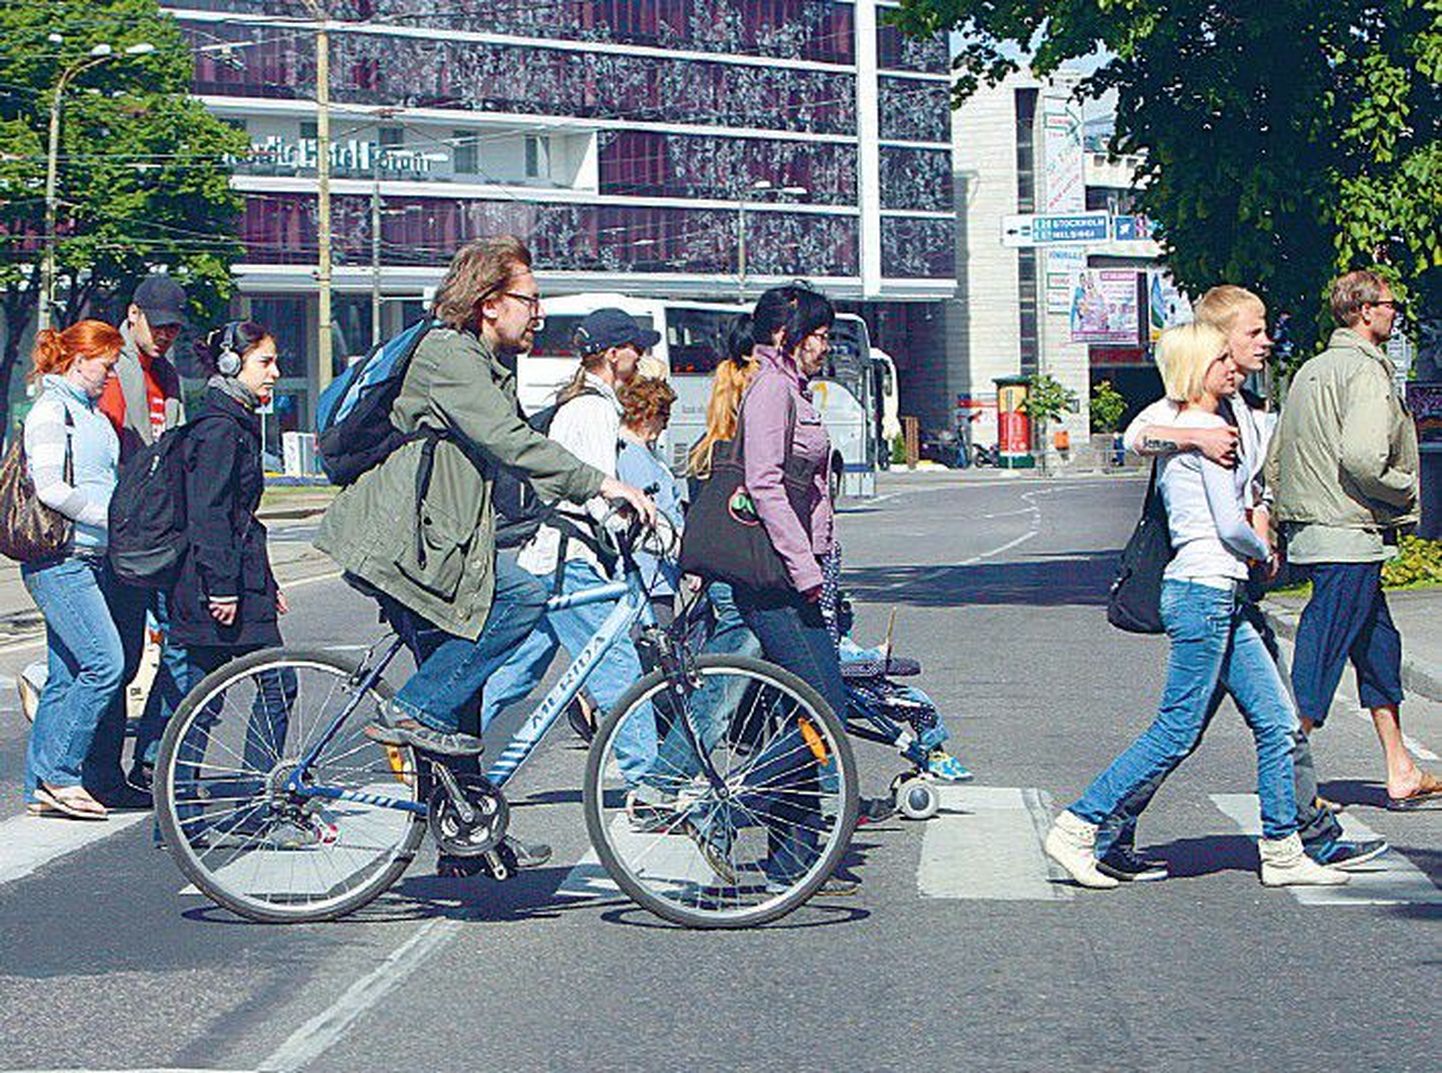 Велосипедистам не разрешается ехать по переходу. Пресекая дорогу, надо слезть с велосипеда и перейти дорогу как пешеход.